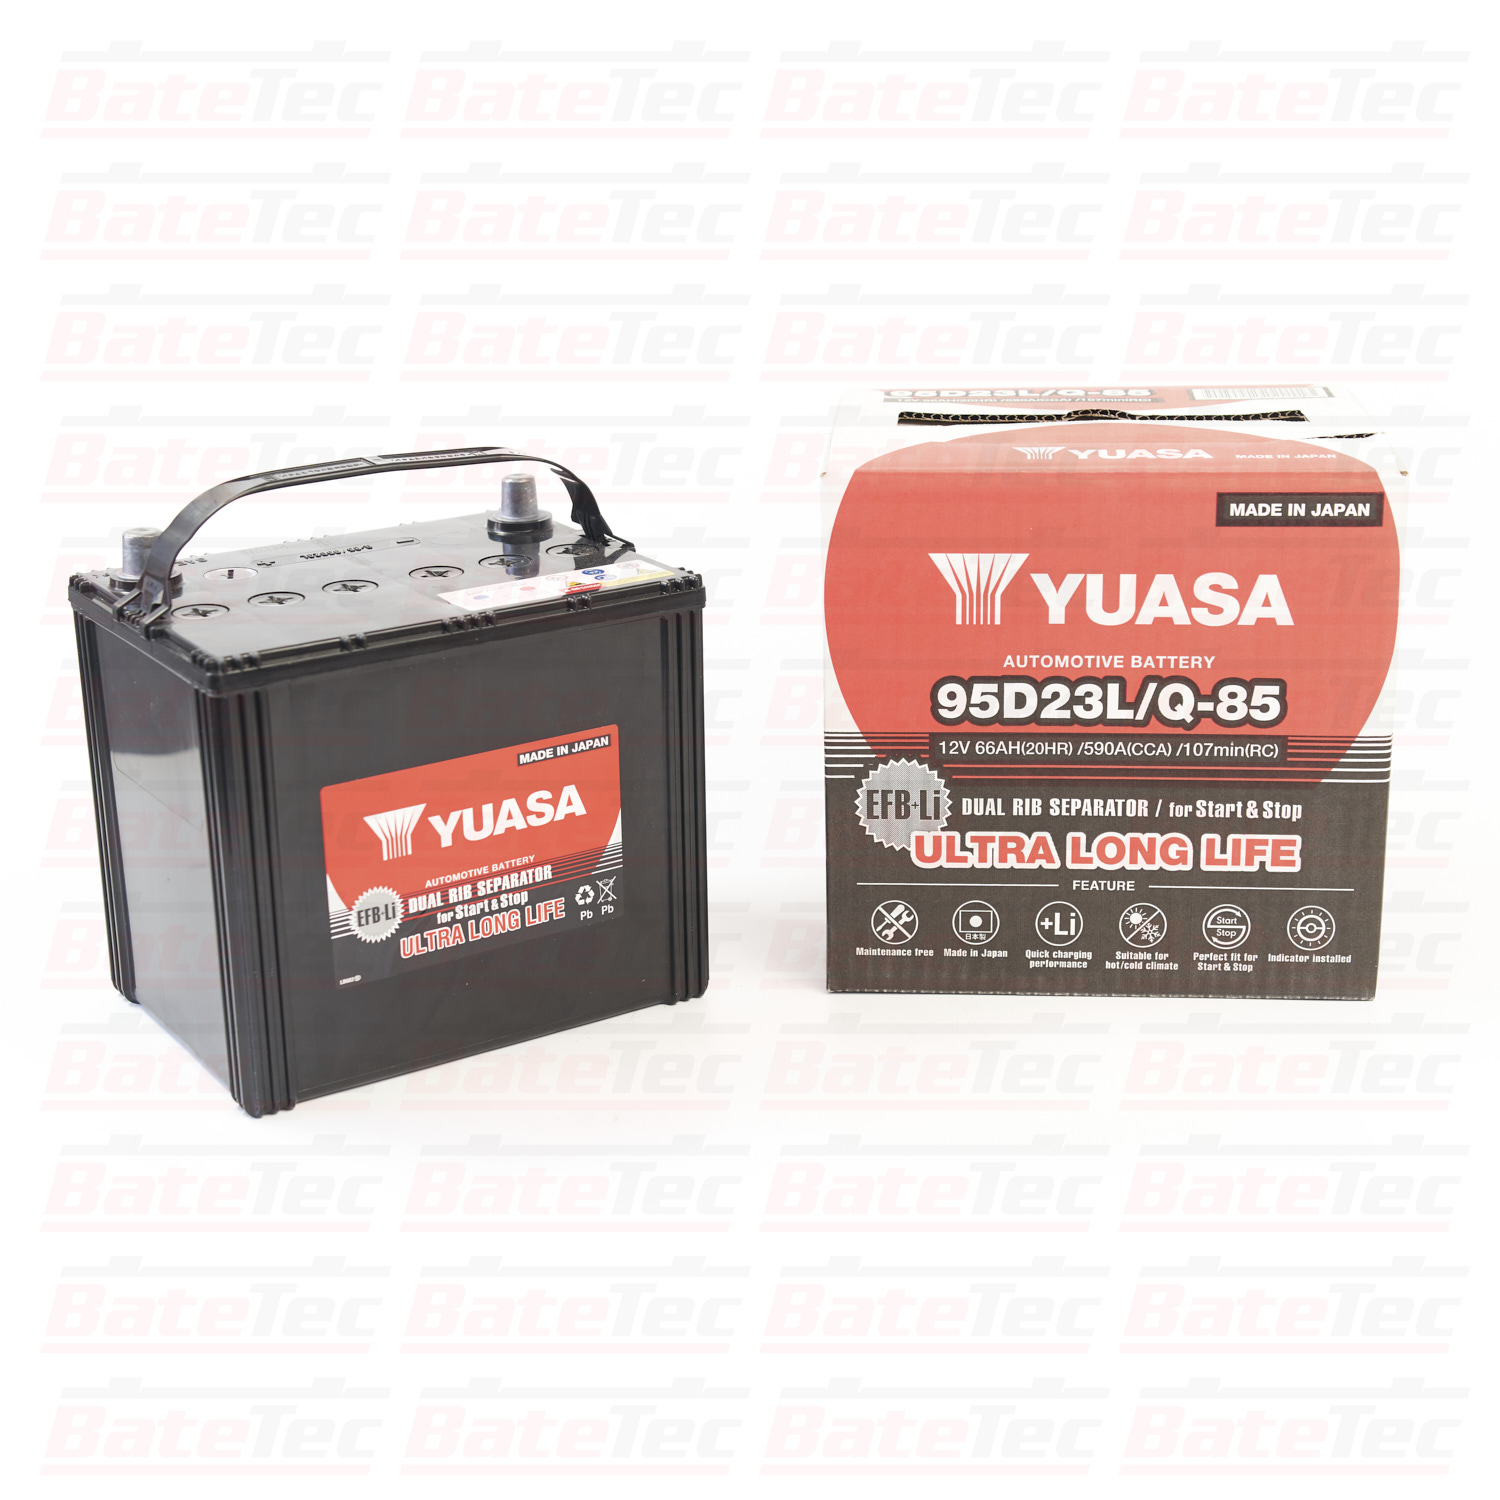 YUASA Q-85/95D23L 